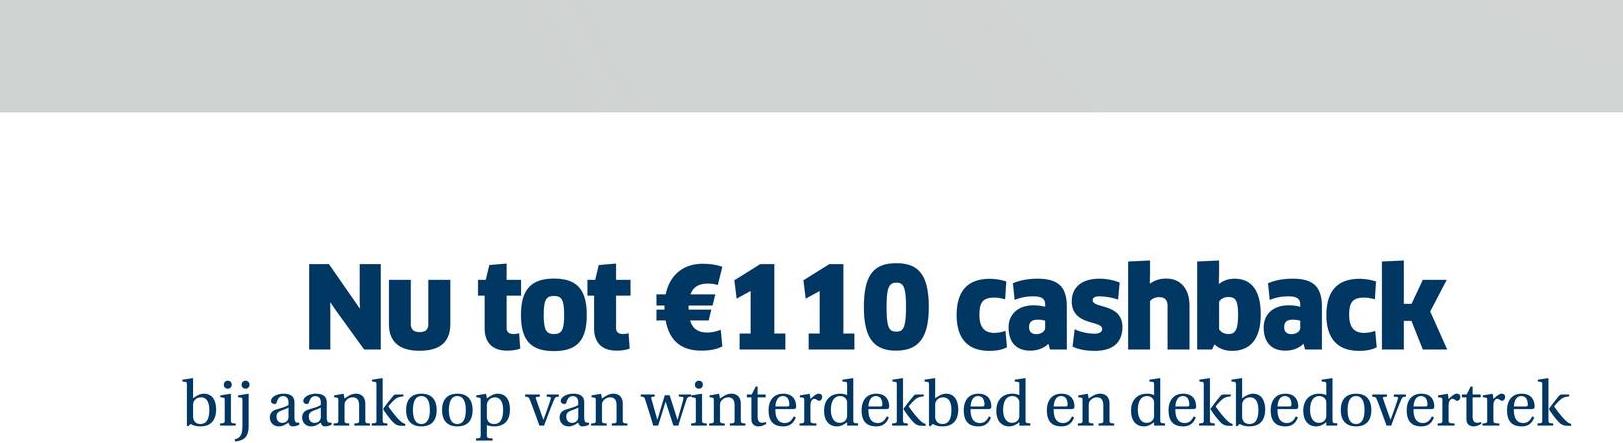 Nu tot €110 cashback
bij aankoop van winterdekbed en dekbedovertrek